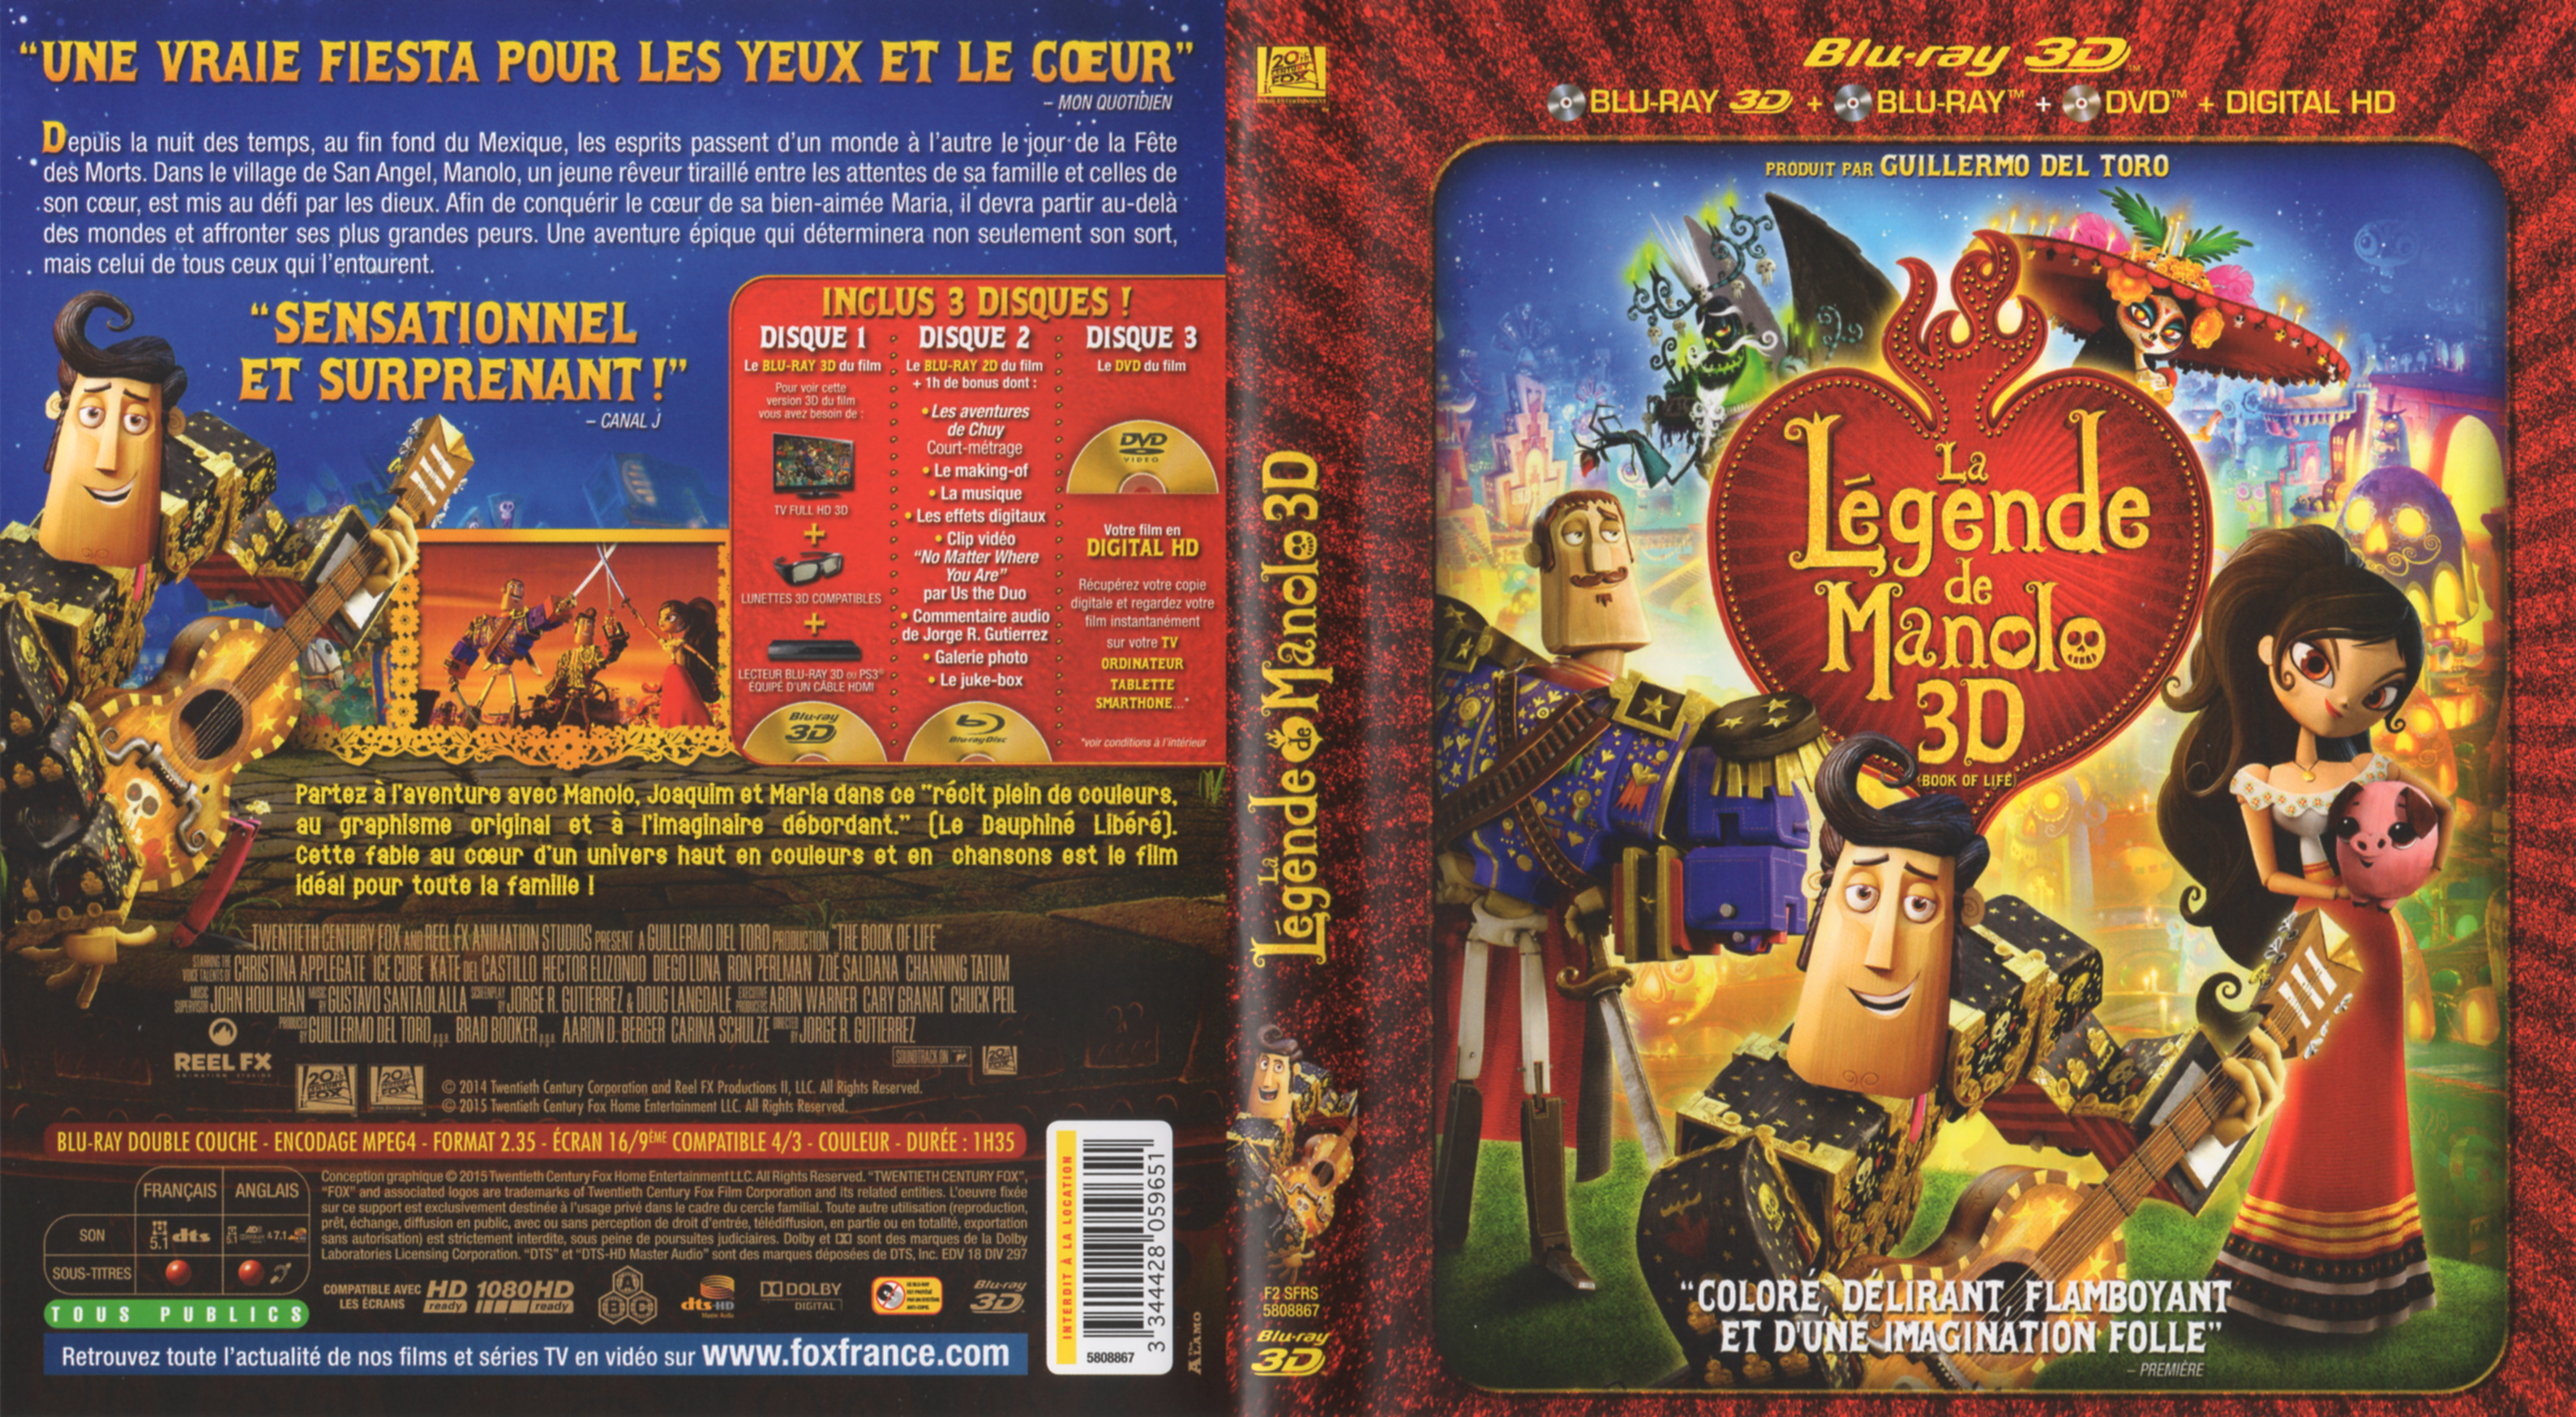 Jaquette DVD La legende de Manolo 3D (BLU-RAY)